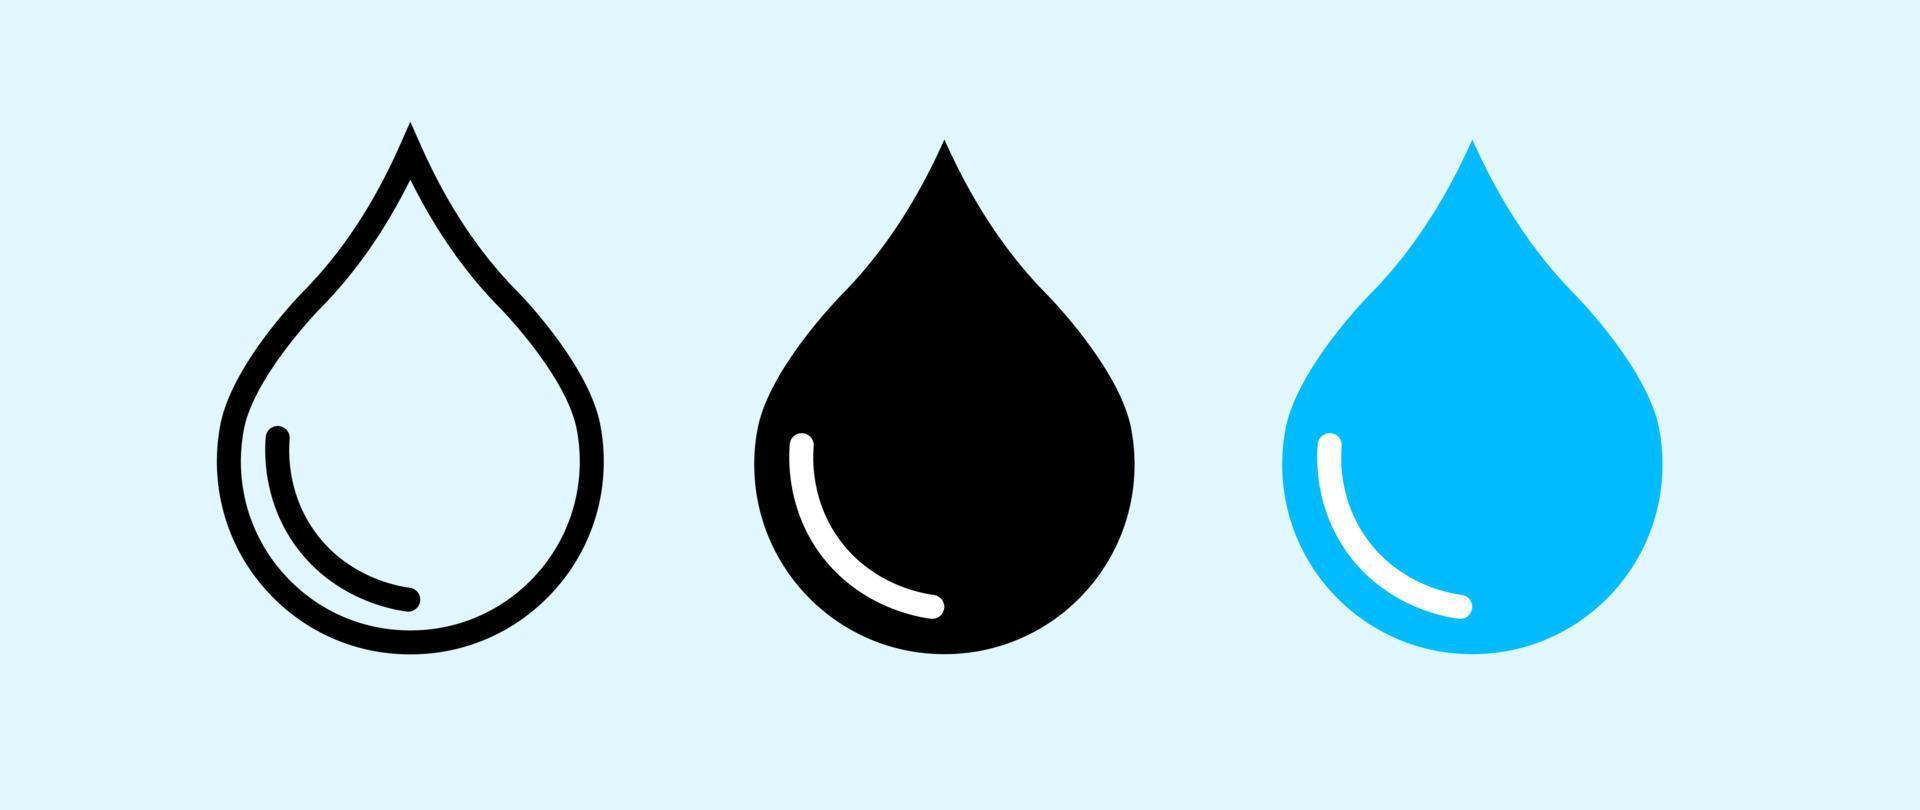 waterdruppel pictogramserie. blauwe waterdruppels instellen. water of olie druppel in vlakke stijl geïsoleerd op een witte achtergrond vector